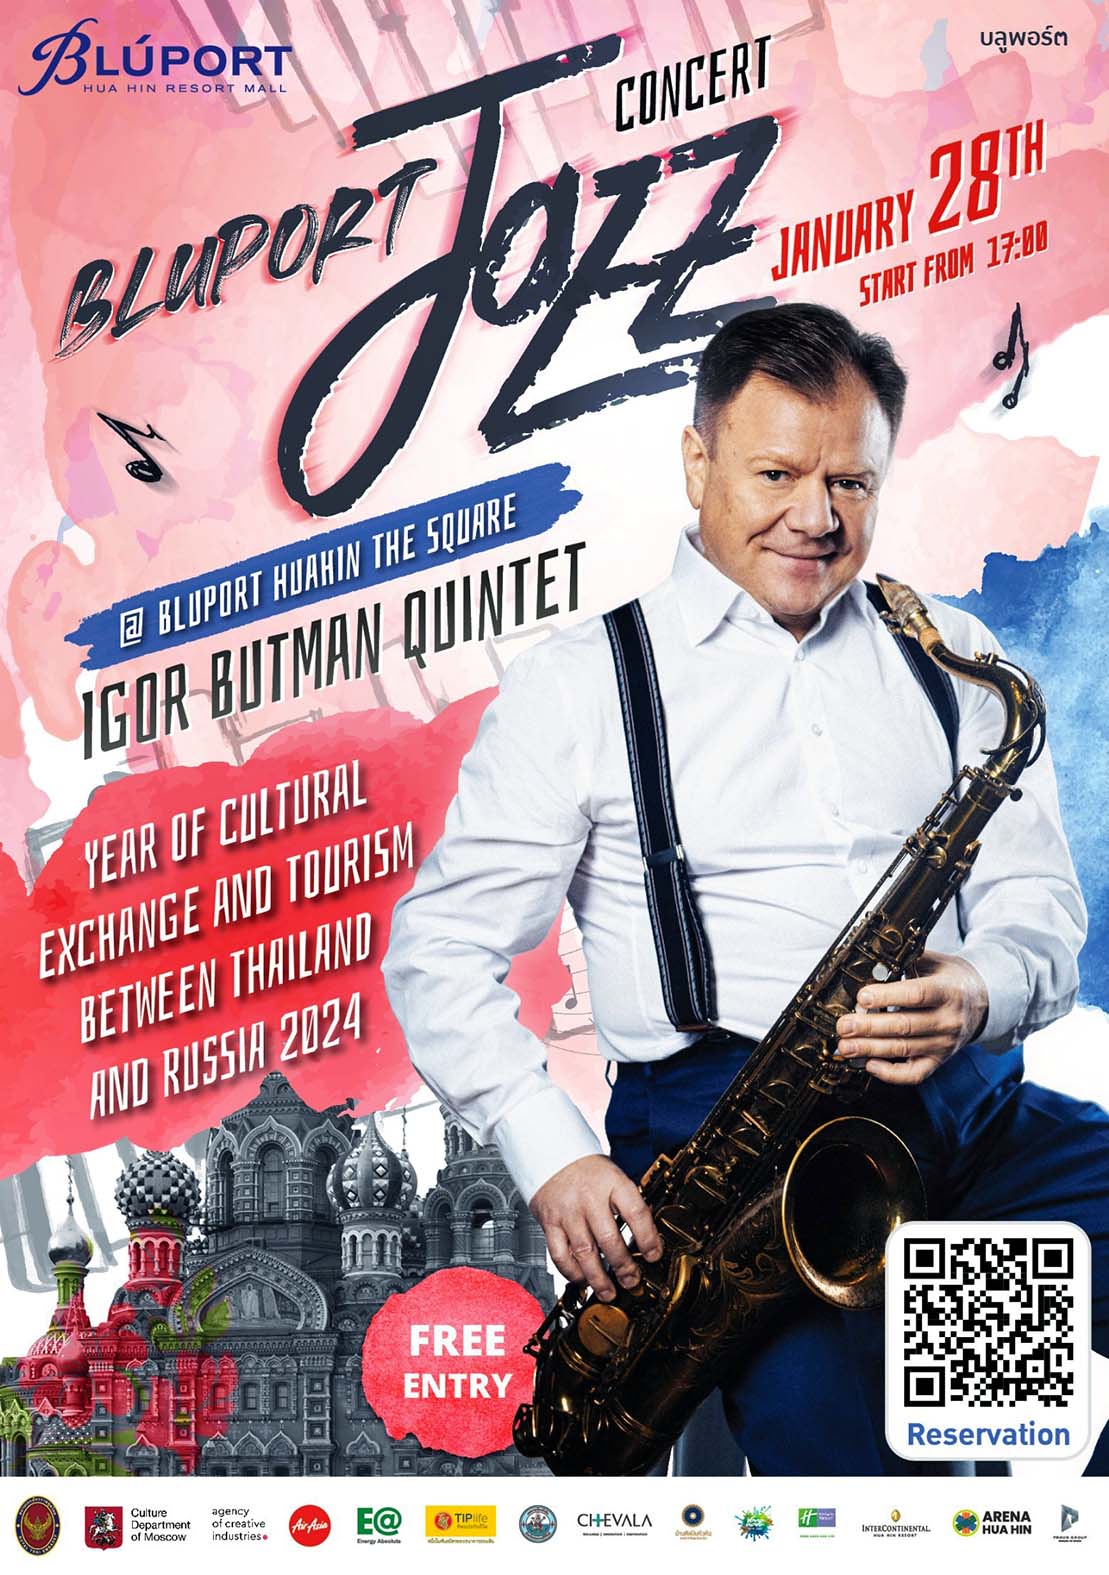 ประจวบคีรีขันธ์-“บลูพอร์ต หัวหิน” จัดใหญ่ “Bluport Jazz Concert Mr.Igor Butman” ศิลปินแจ๊สชื่อดังระดับโลก